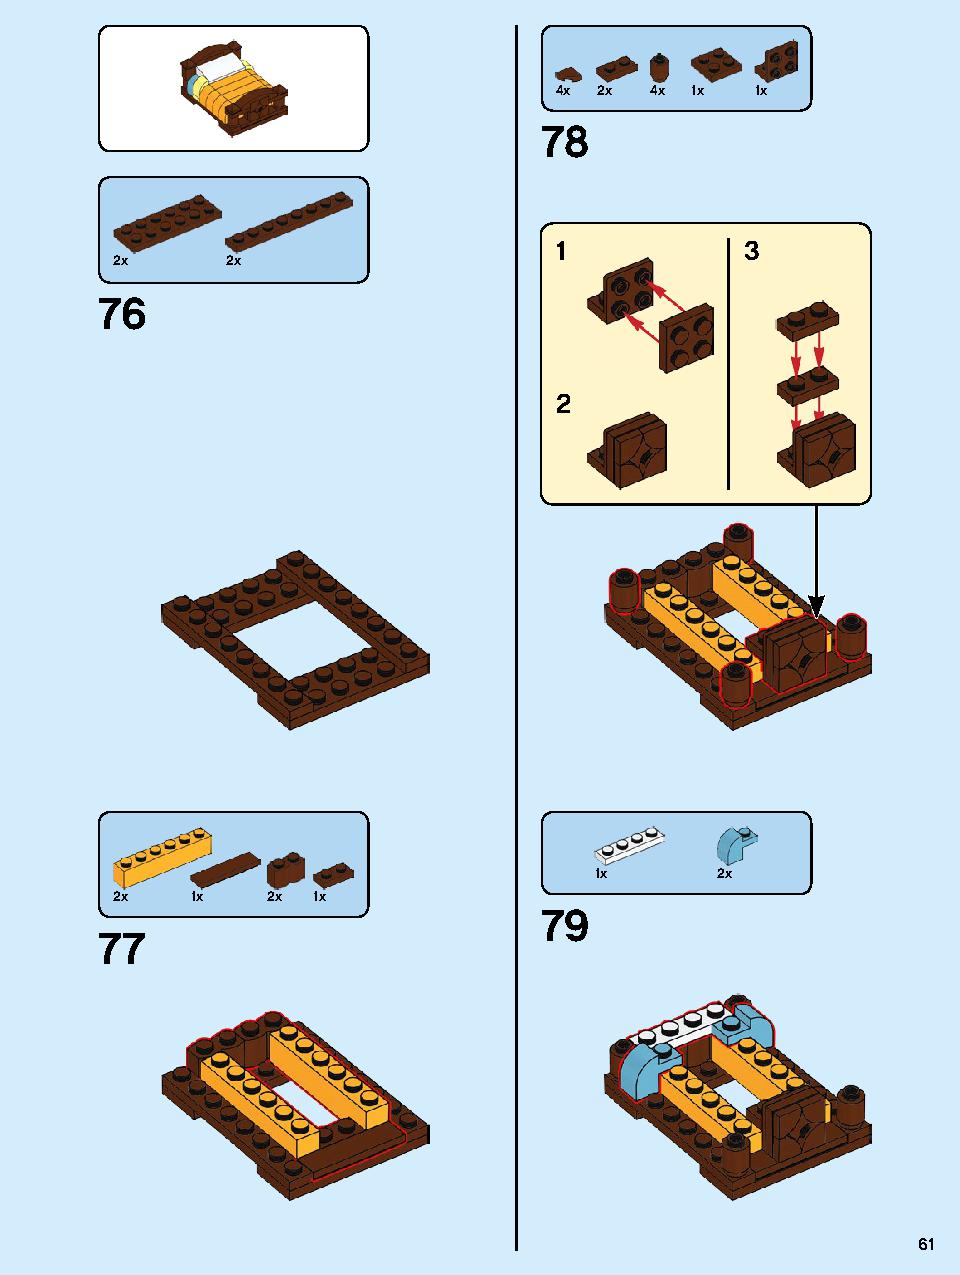 本屋さん 10270 レゴの商品情報 レゴの説明書・組立方法 61 page